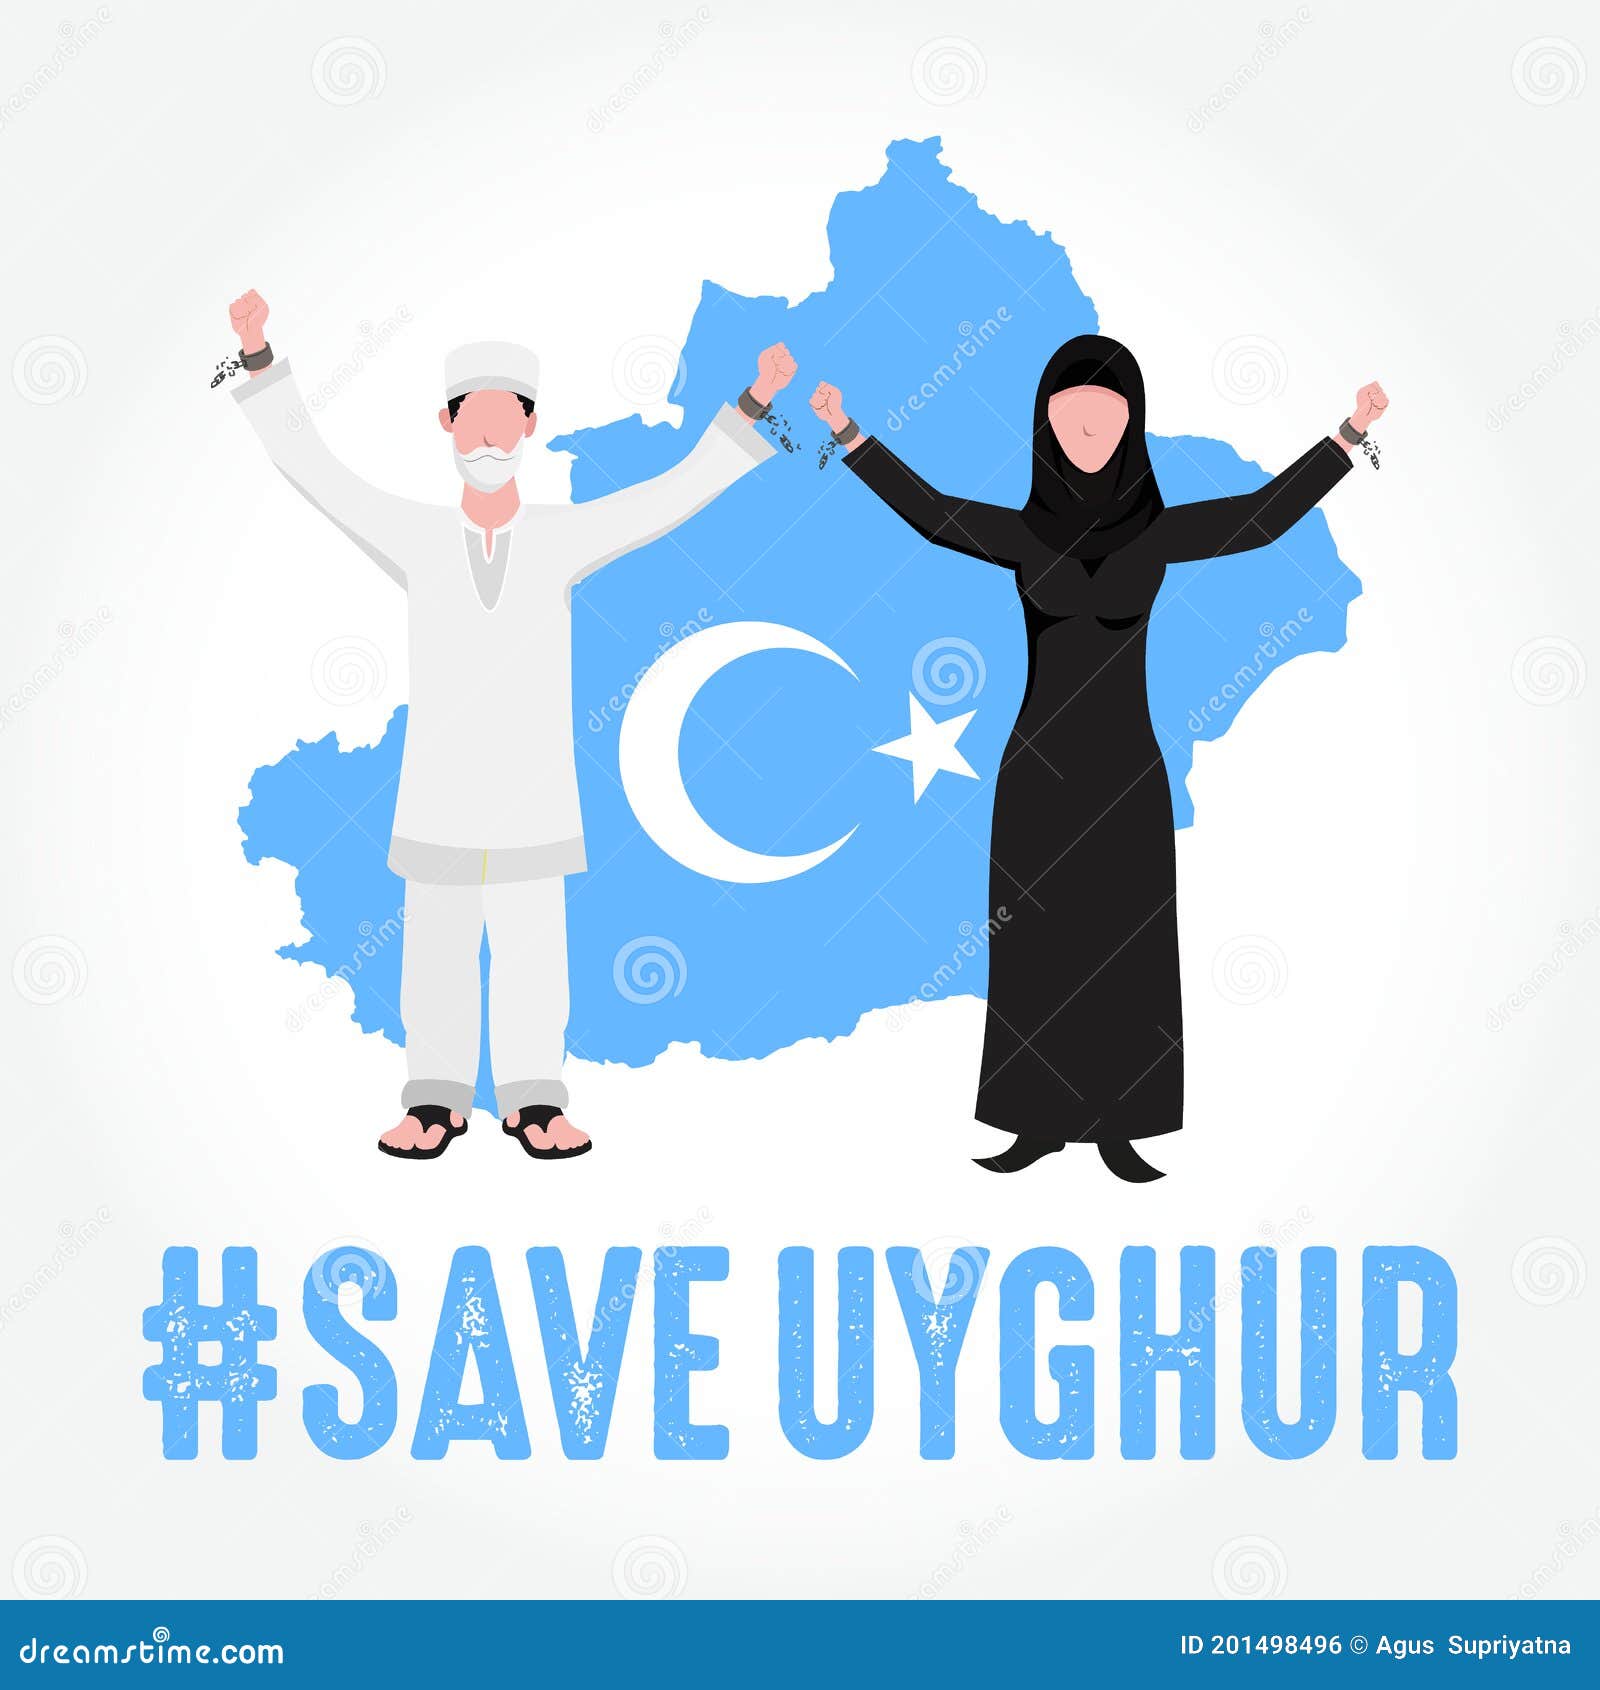 save uyghur  . uyghur peoples raising hands and broken chains